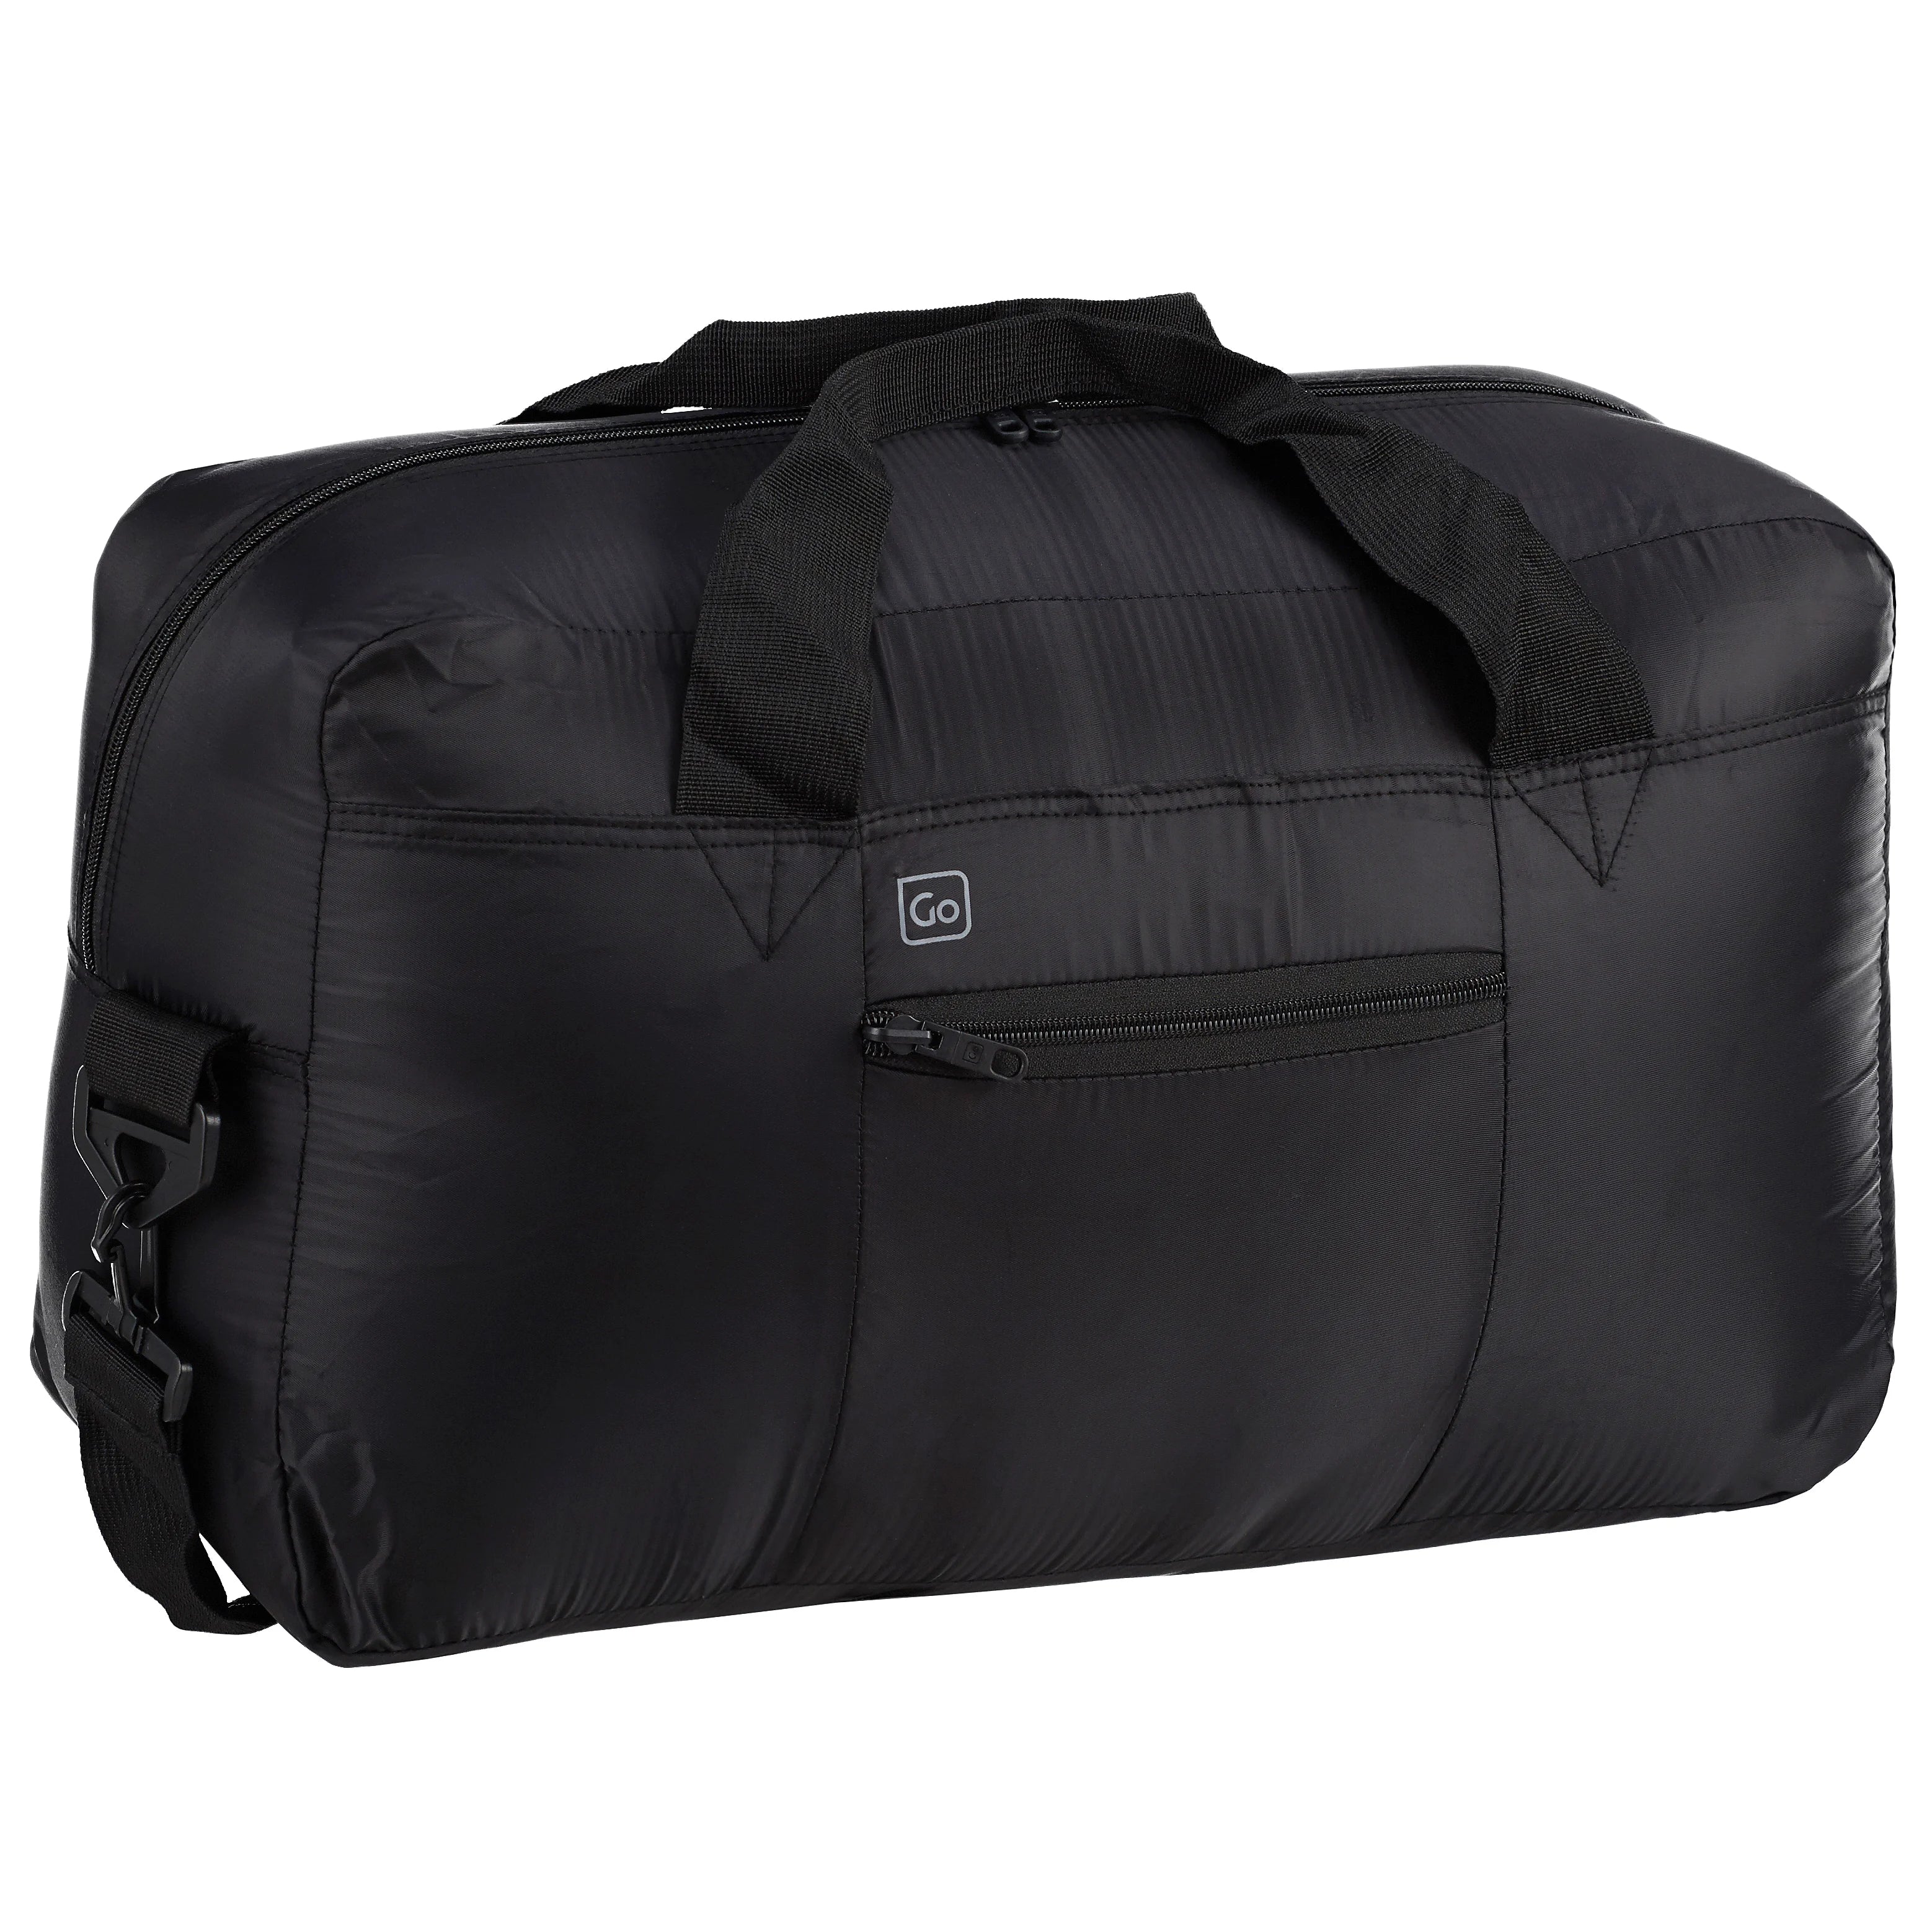 Accessoires de voyage Design Go sac de voyage pliable Travel Bag 50 cm - rouge